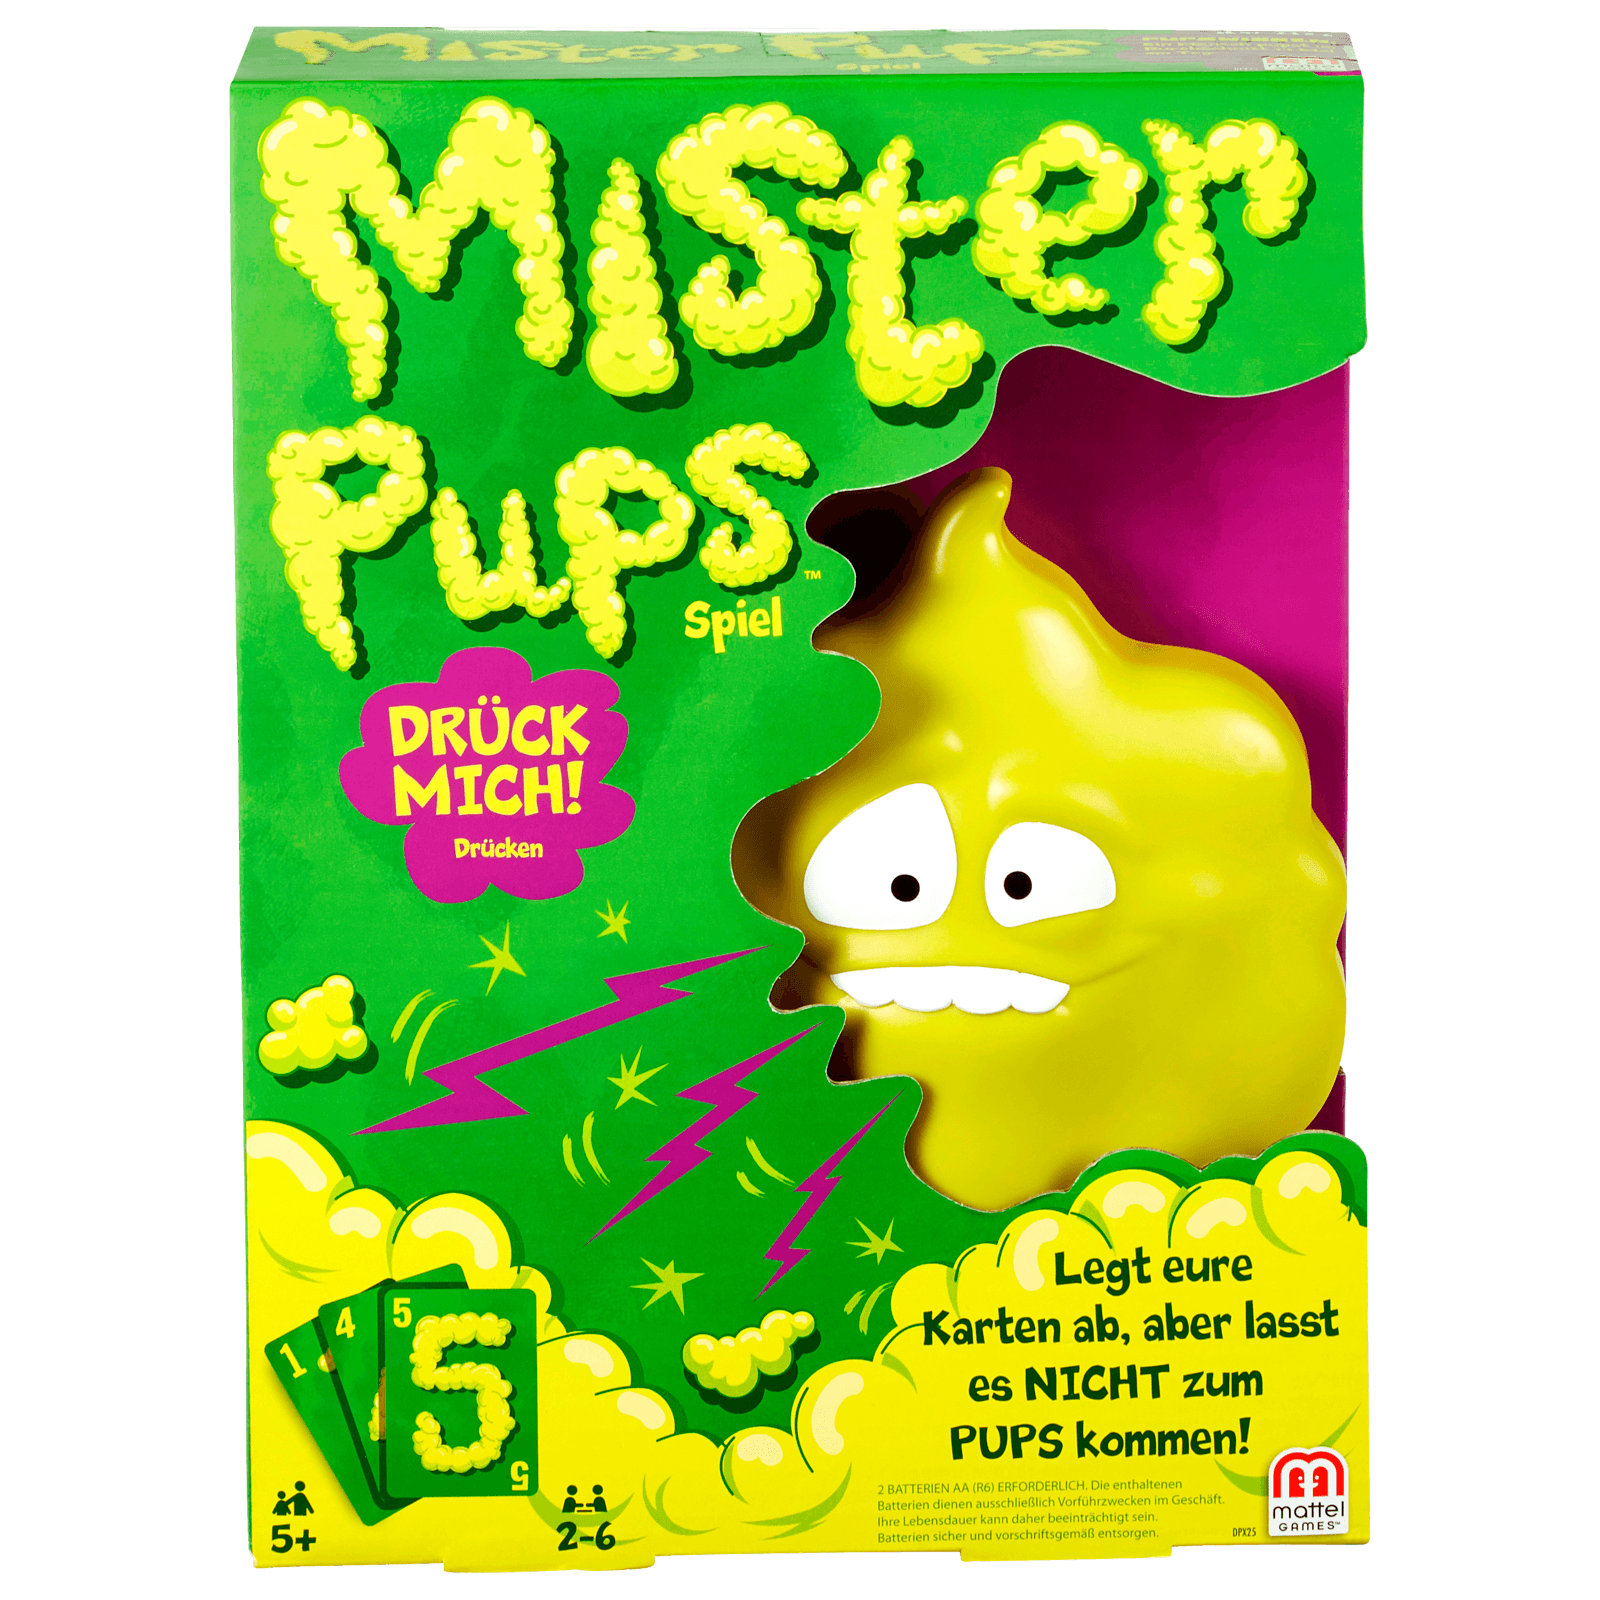 online REWE Mattel Spiel bei Pups Mister bestellen!